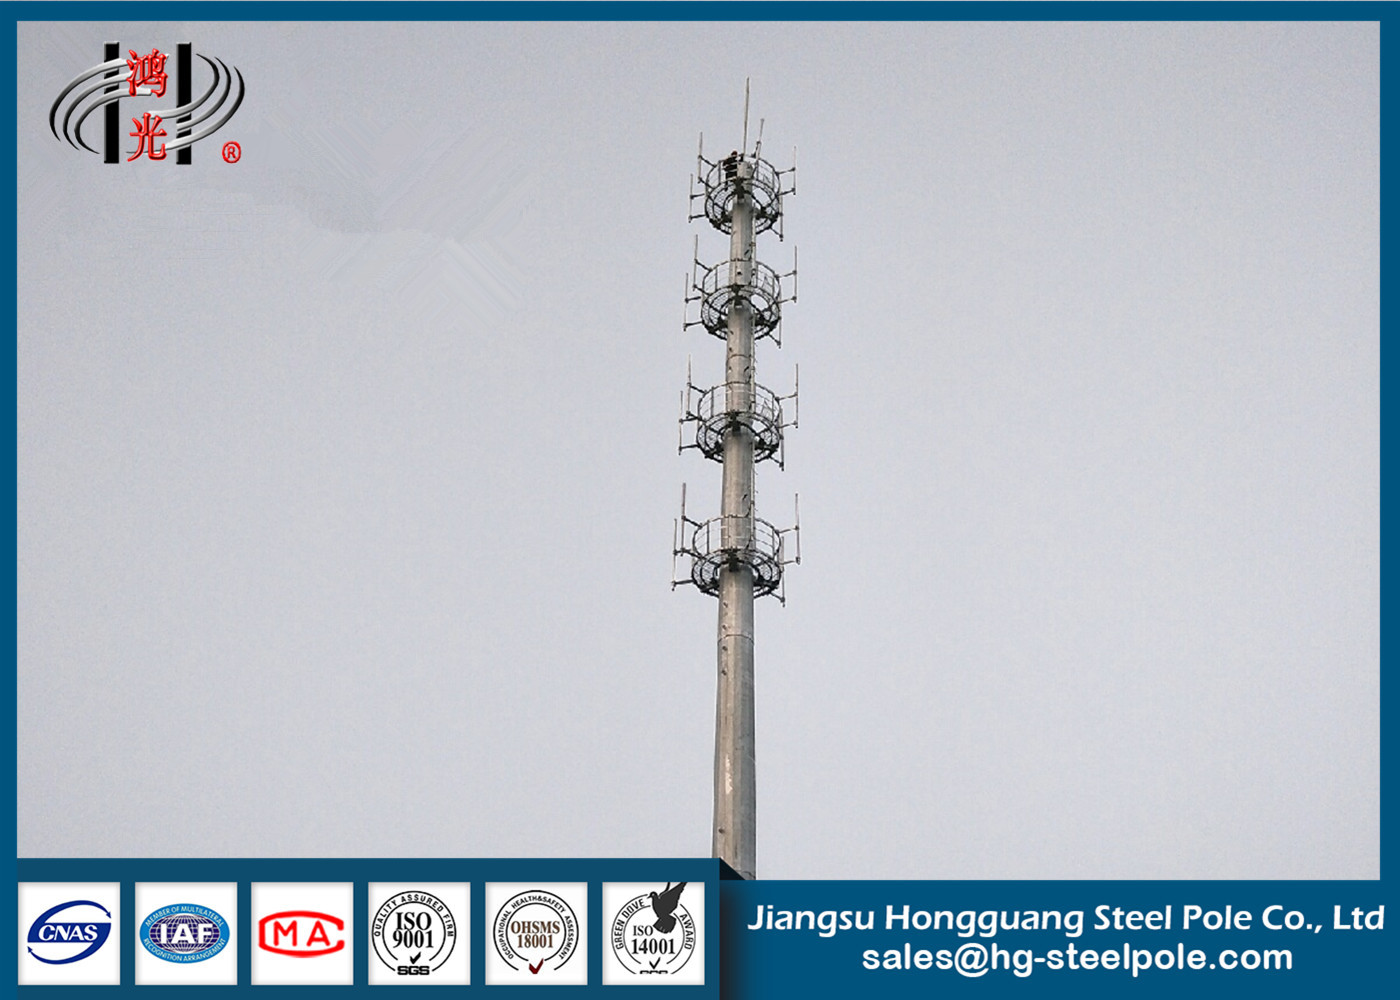 Torri poligonali di telecomunicazione di HDG con il breve ciclo di costruzione per trasmettere per radio